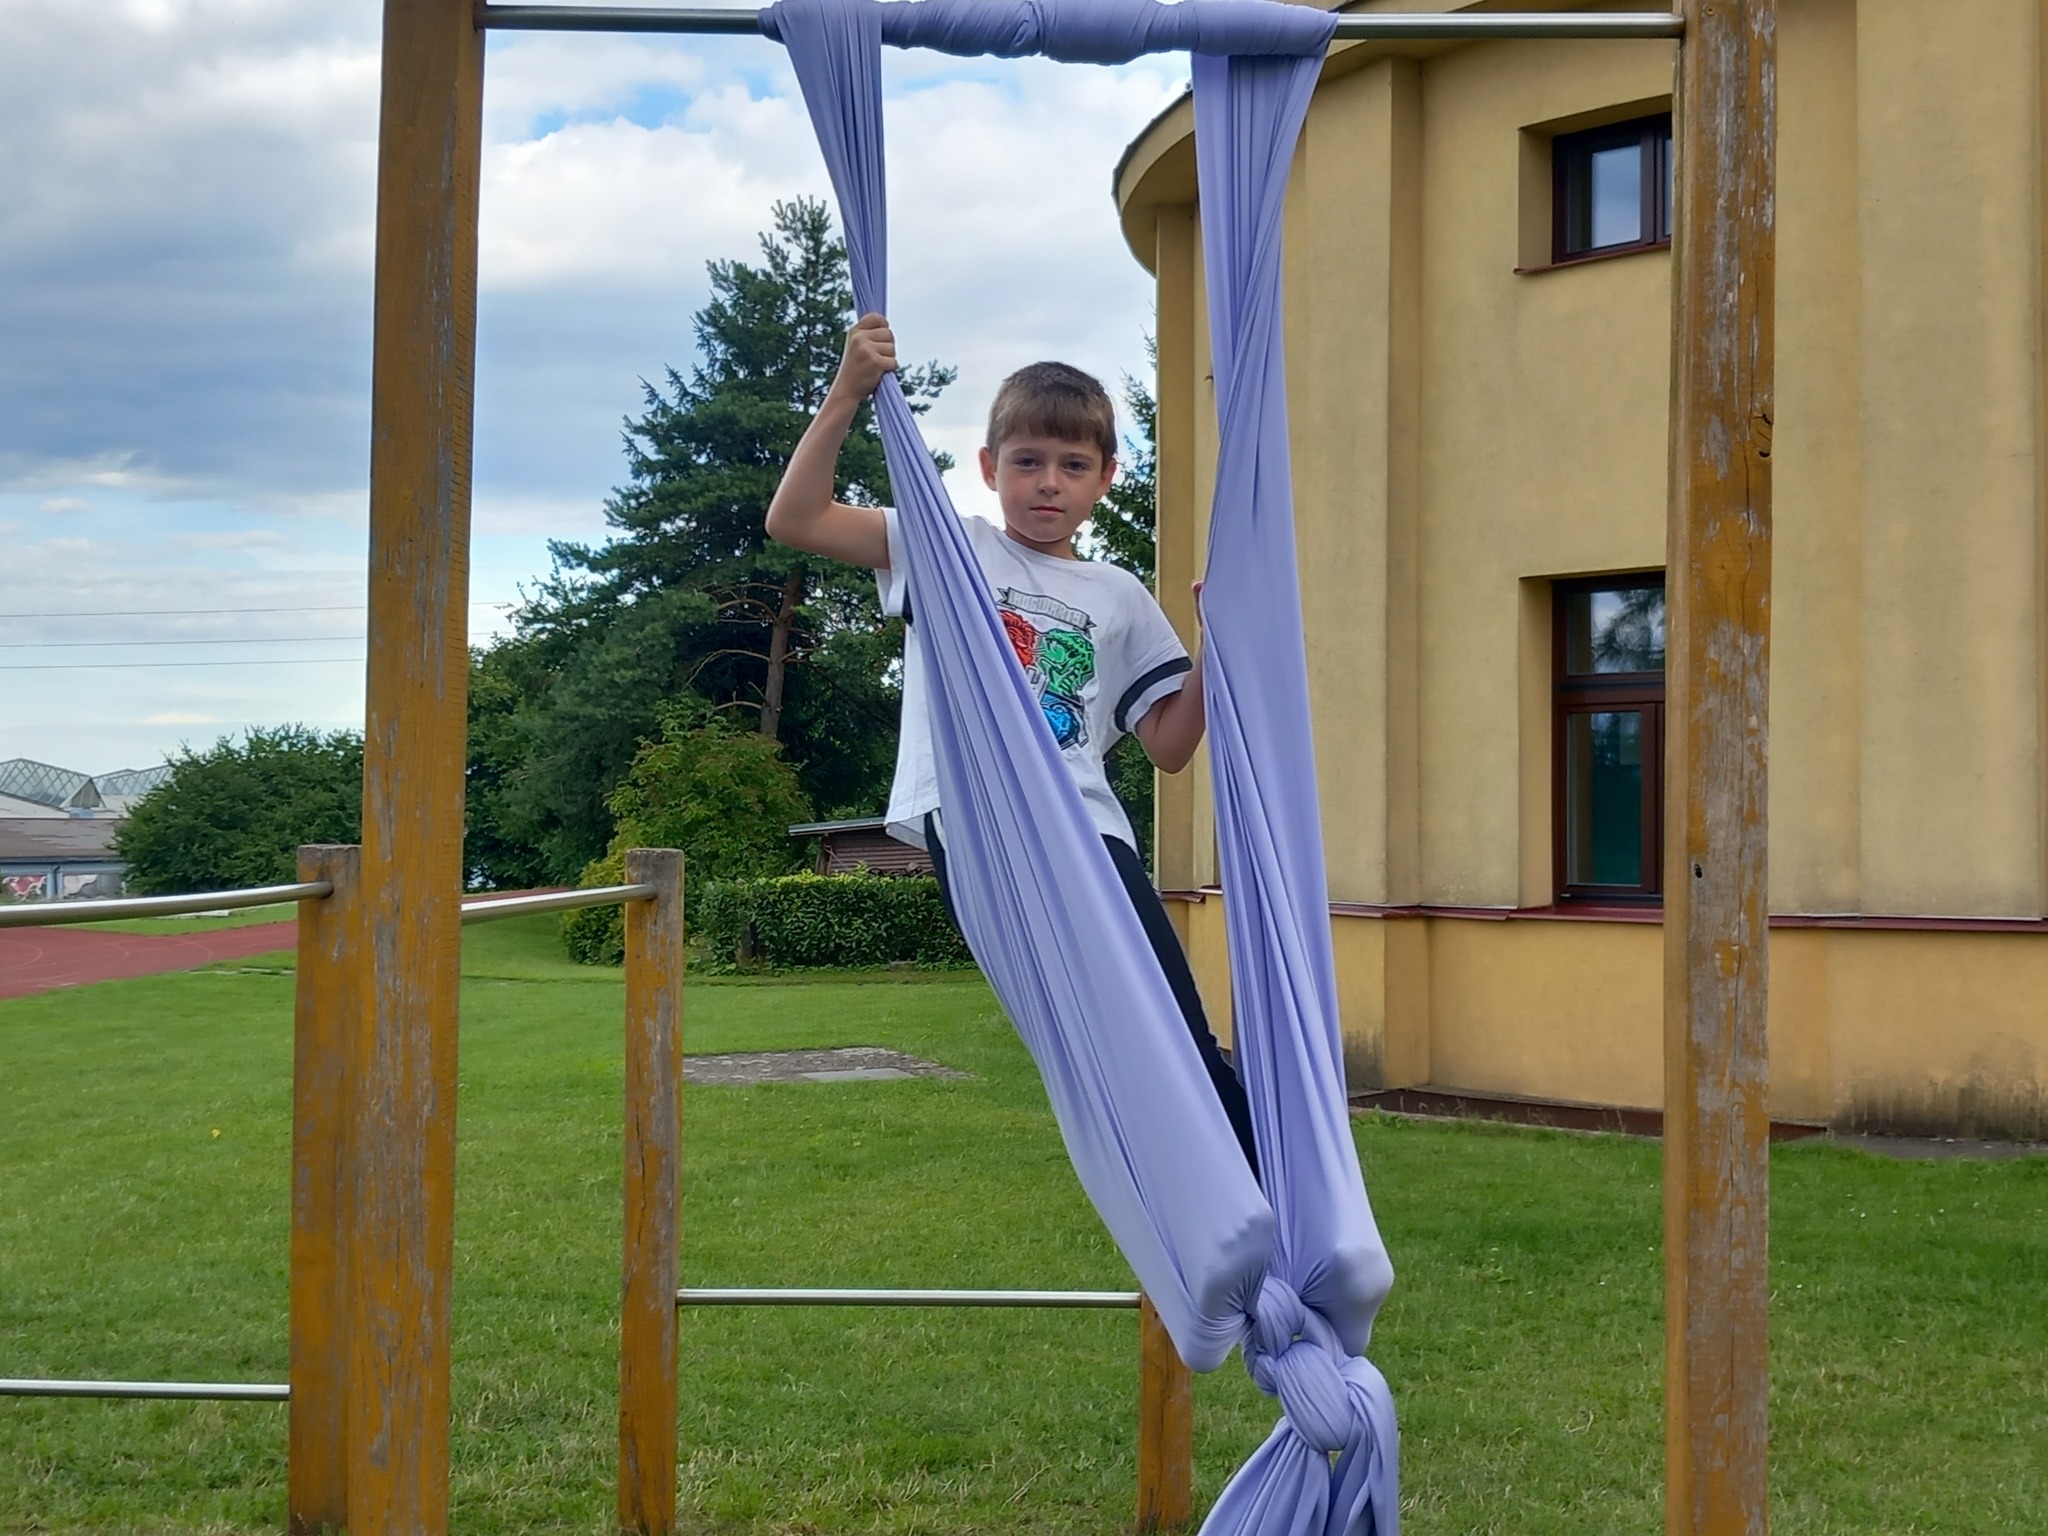 Děti na letním cirkusovém táboře cvičí jako artisté vzduchovou akrobacii blízko školy.